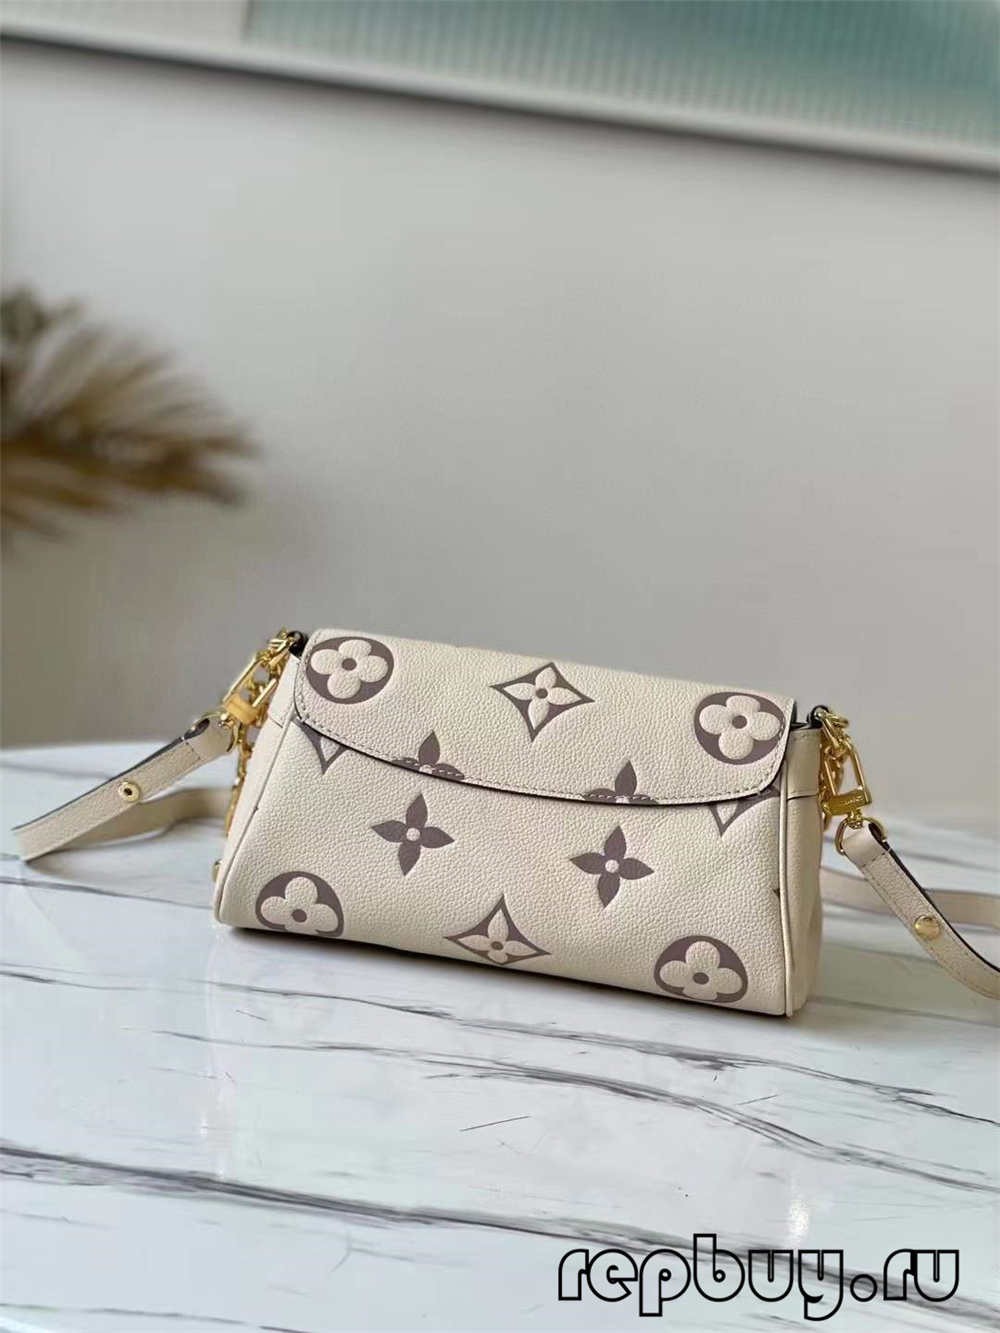 کیف ماکت با کیفیت برتر Louis Vuitton M45836 (2022 به روز شده)-Best Quality Fake Louis Vuitton Bag Online Store, Replica designer bag ru